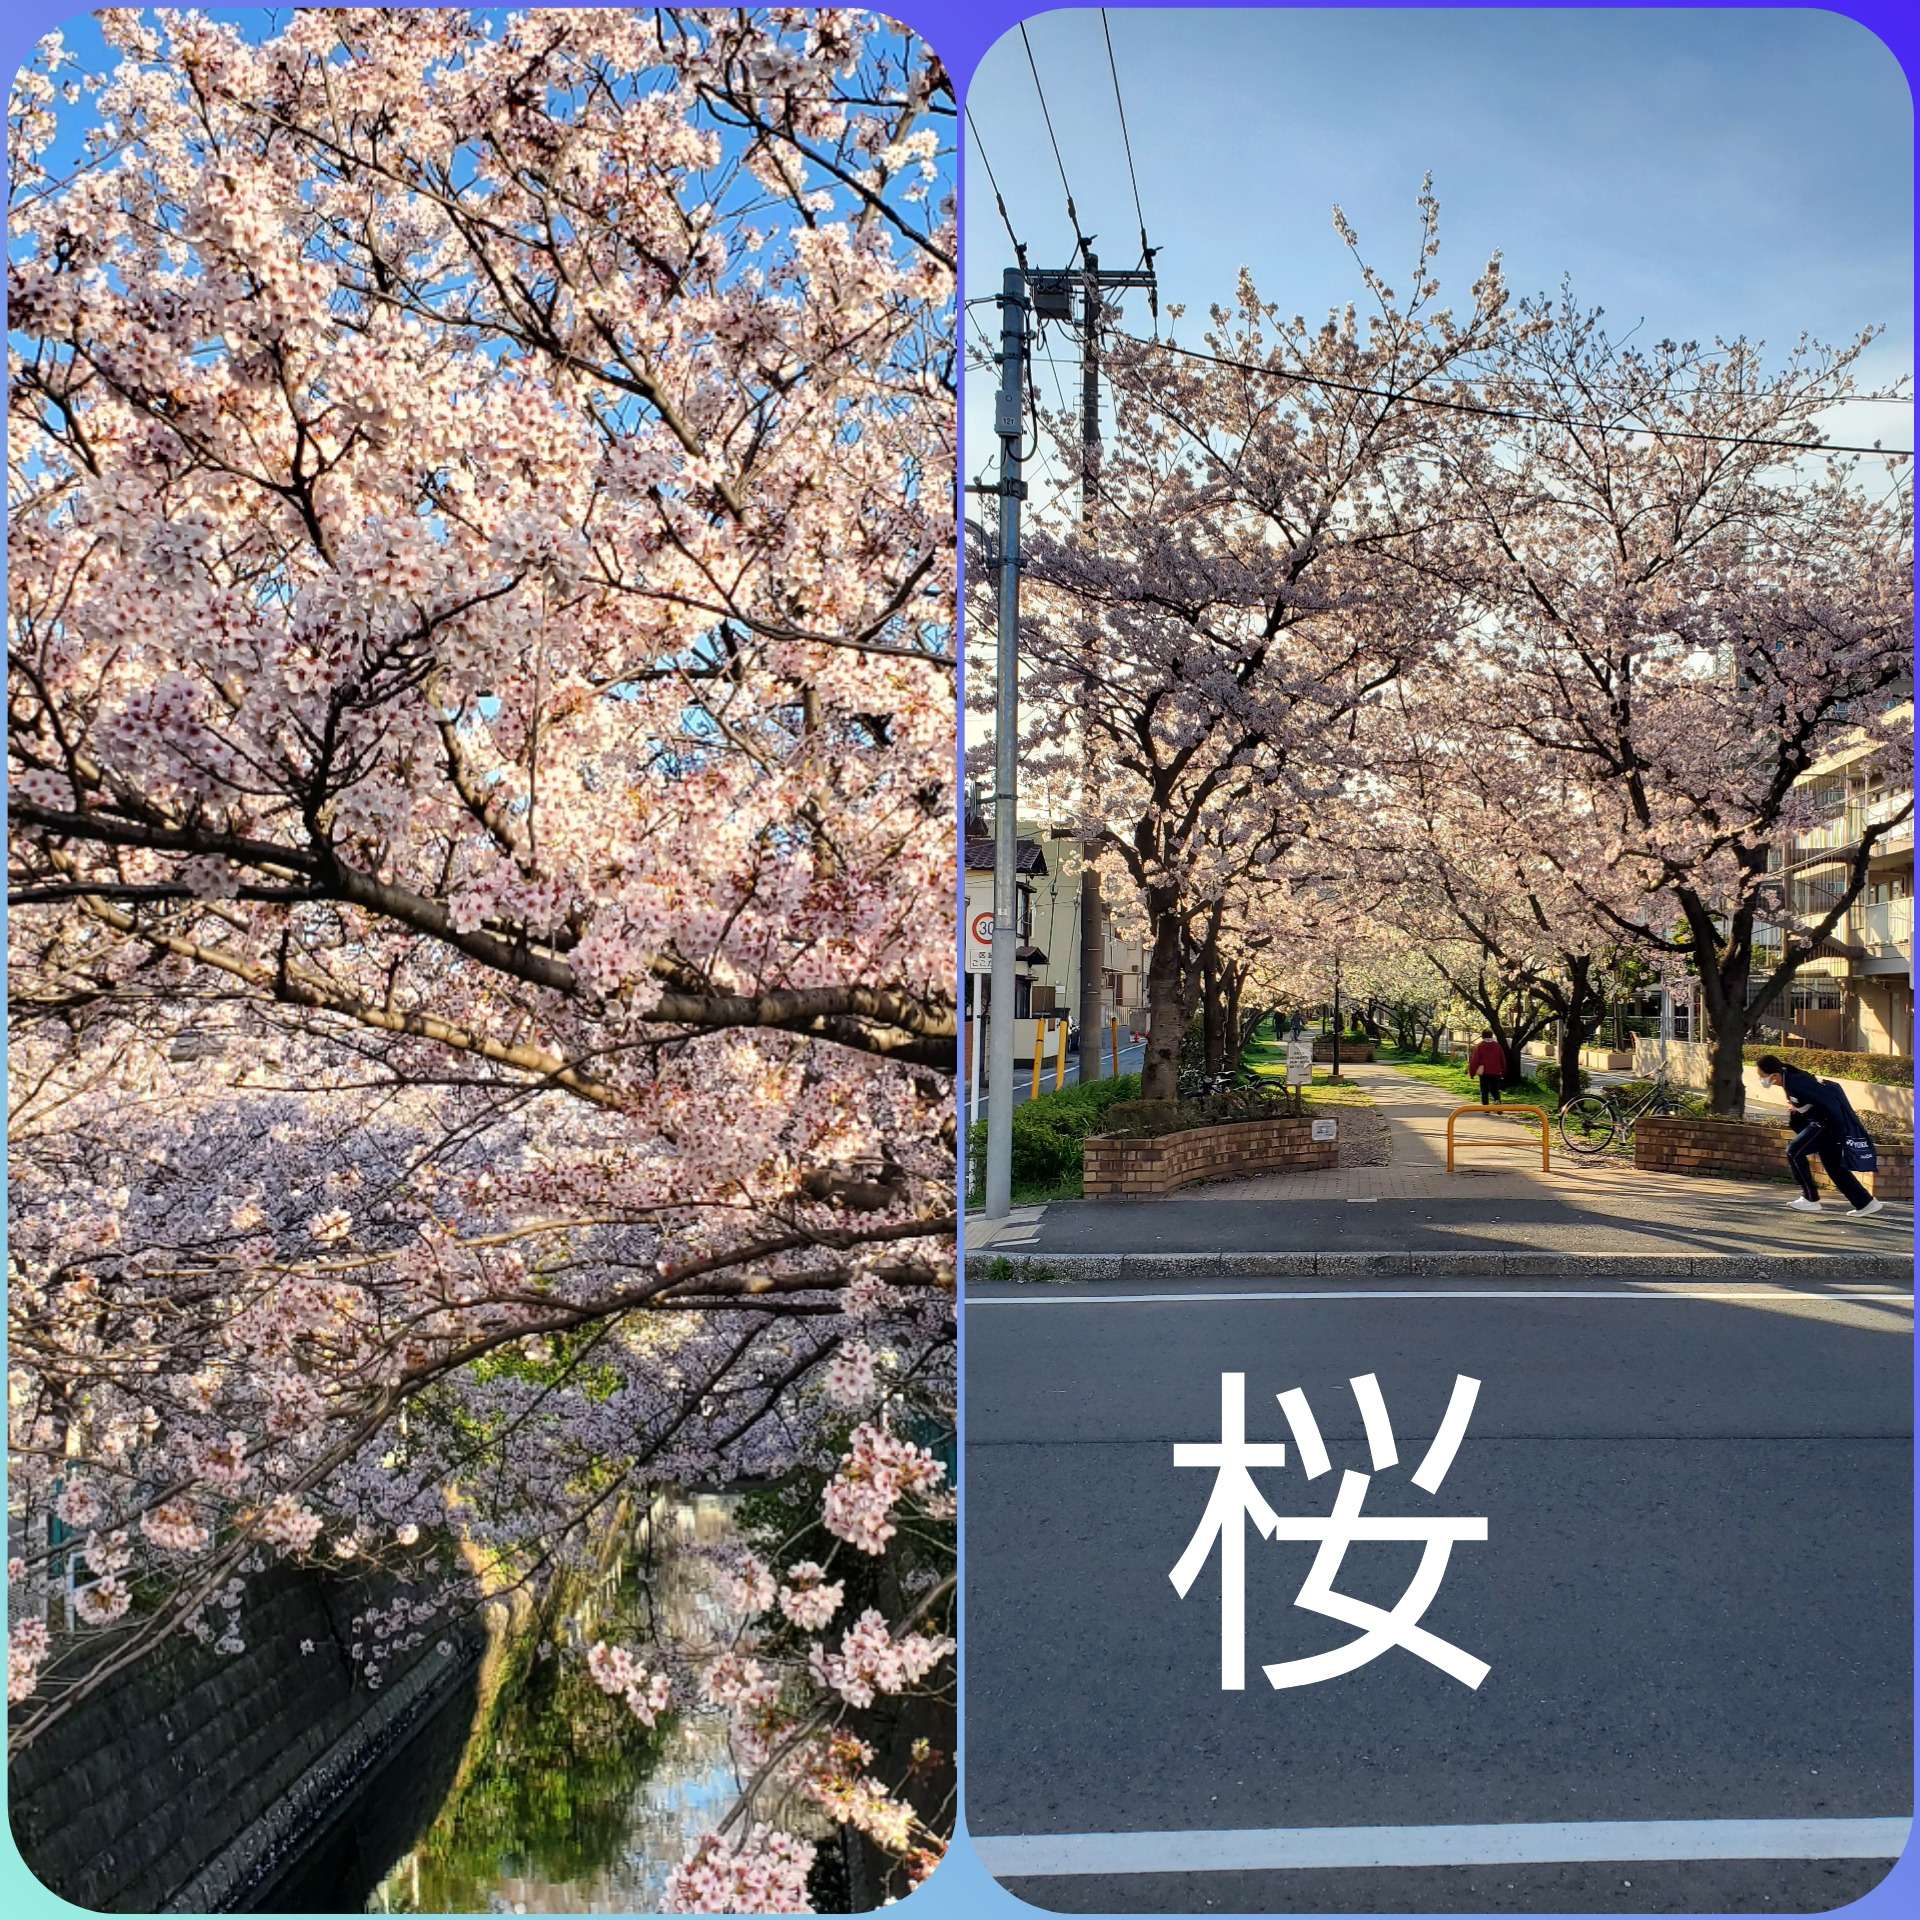 事務所の近く【桜】が満開になりました。とっても綺麗です。毎年桜を拝見してこの桜のように綺麗に仕上げるぞ❗って気持ちになります